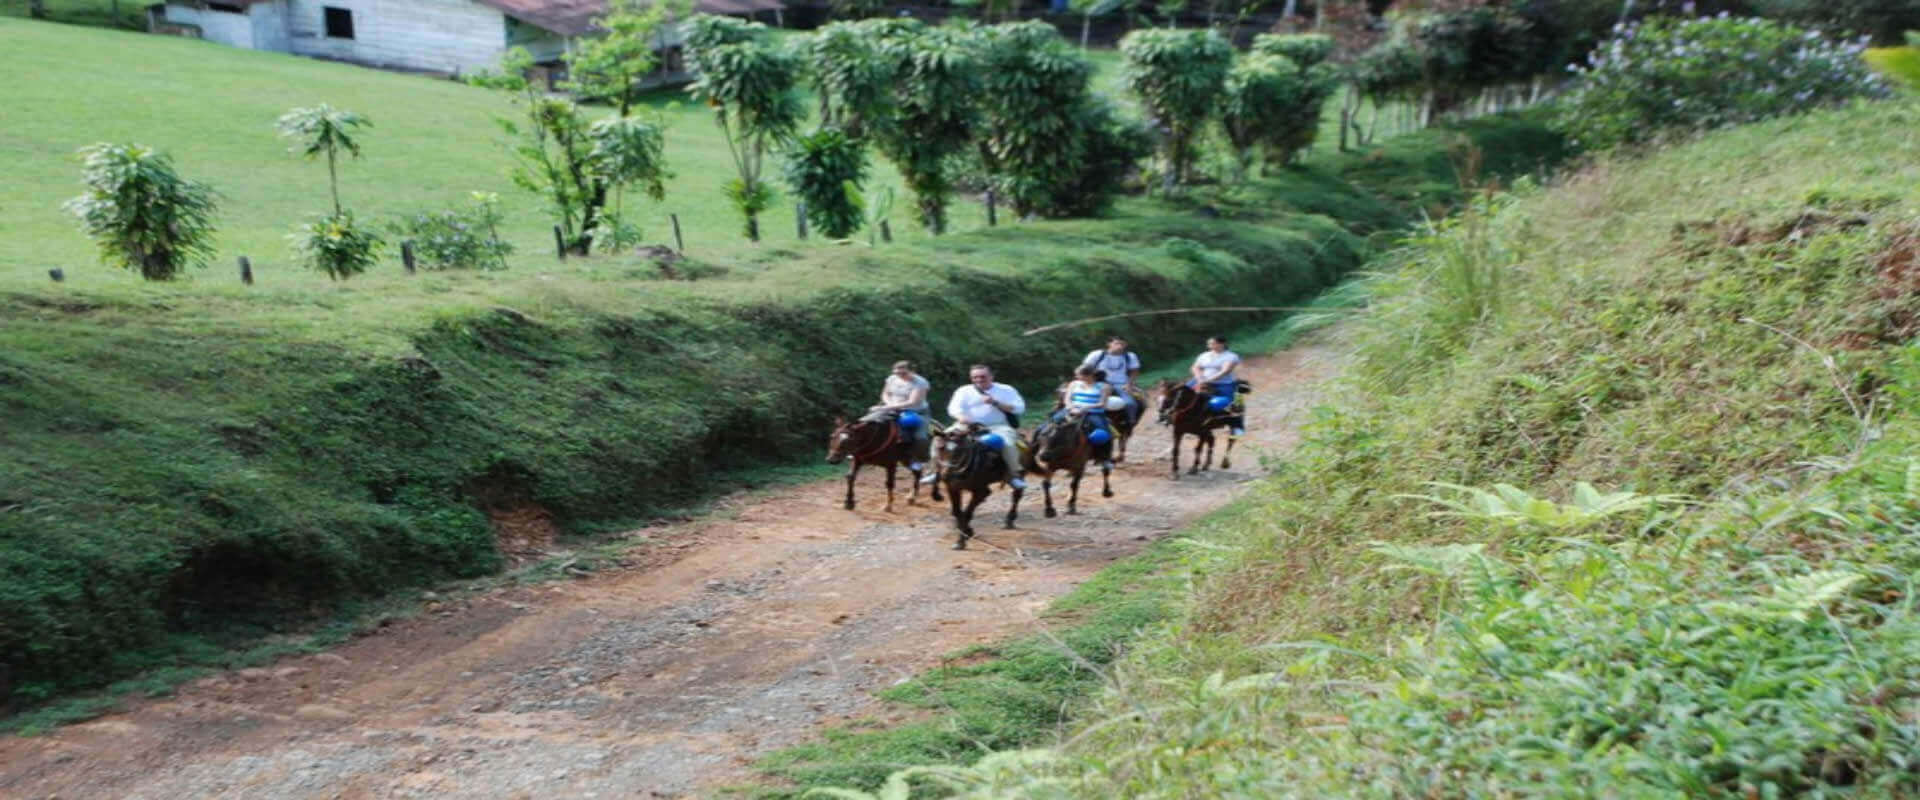 Horseback riding in Manuel Antonio | Costa Rica Jade Tours